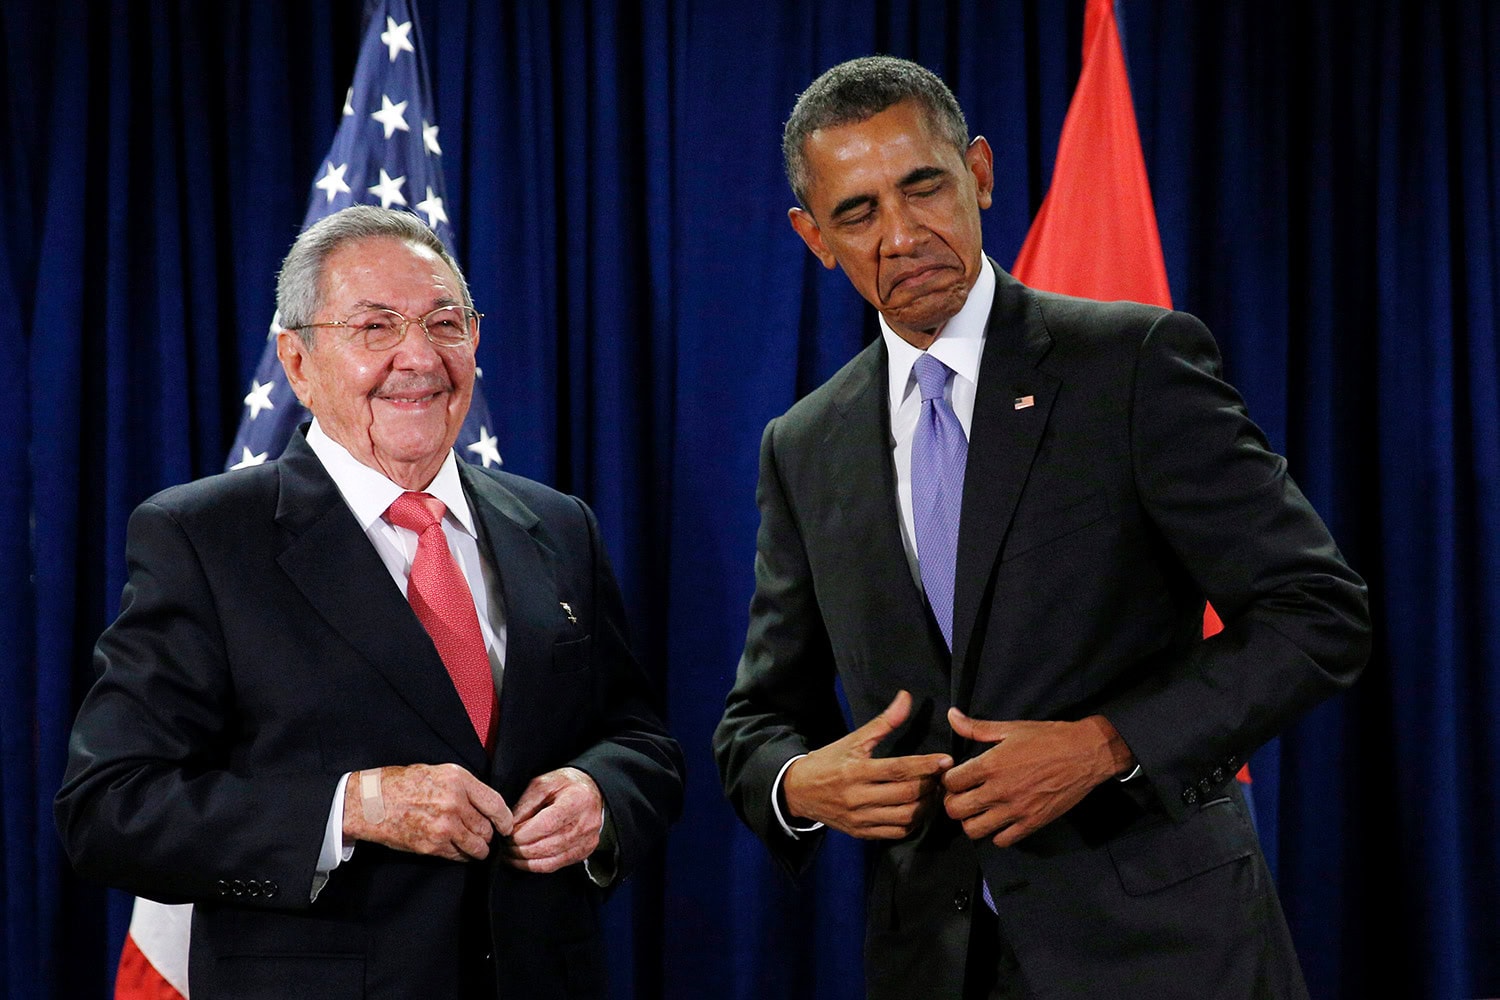 Obama prepara una histórica visita a Cuba en las "próximas semanas"